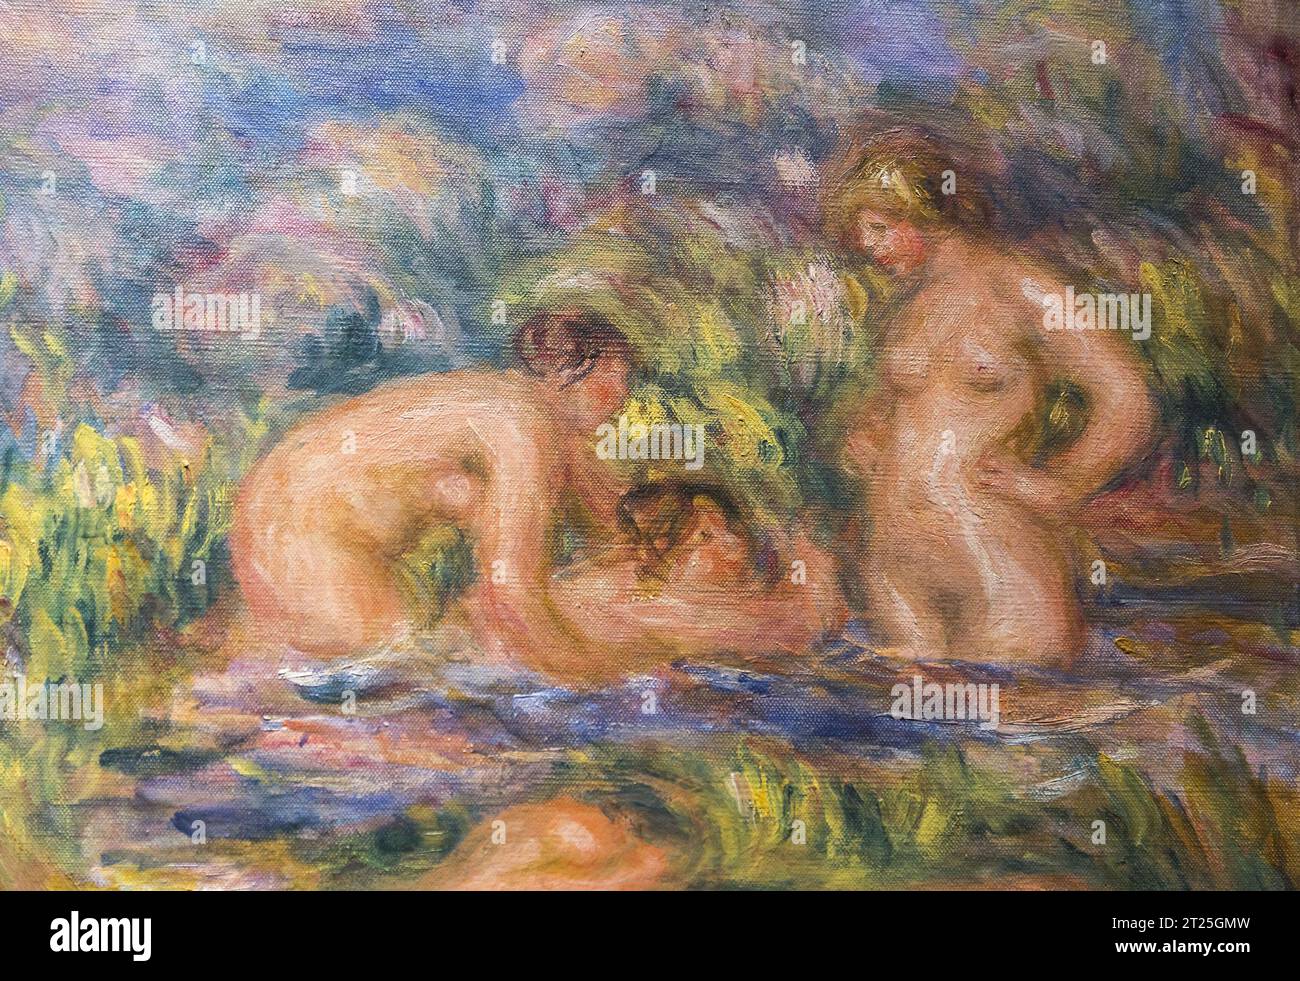 Détail de la peinture de l'artiste français Renoir Banque D'Images